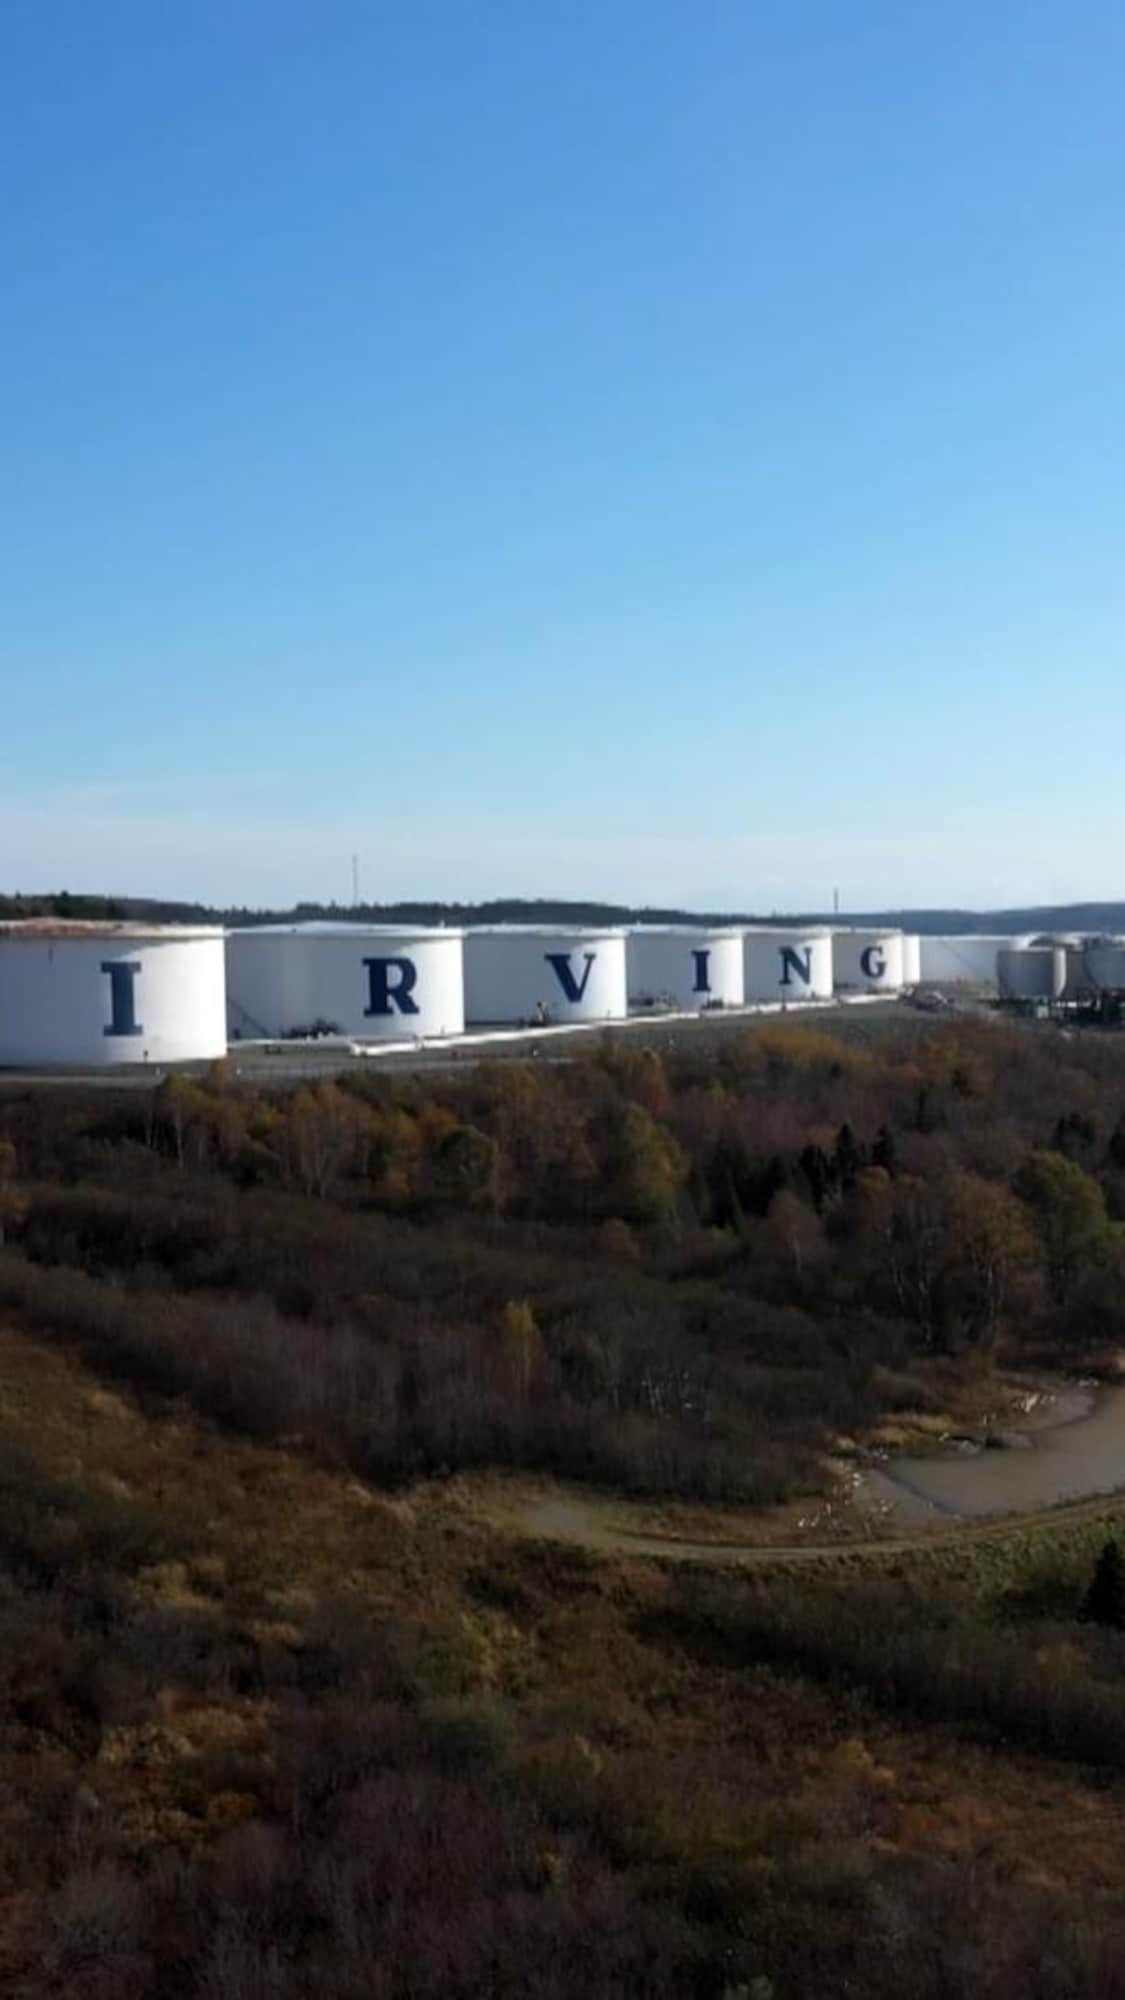 Des réservoirs affichent chacun une lettre du nom Irving.